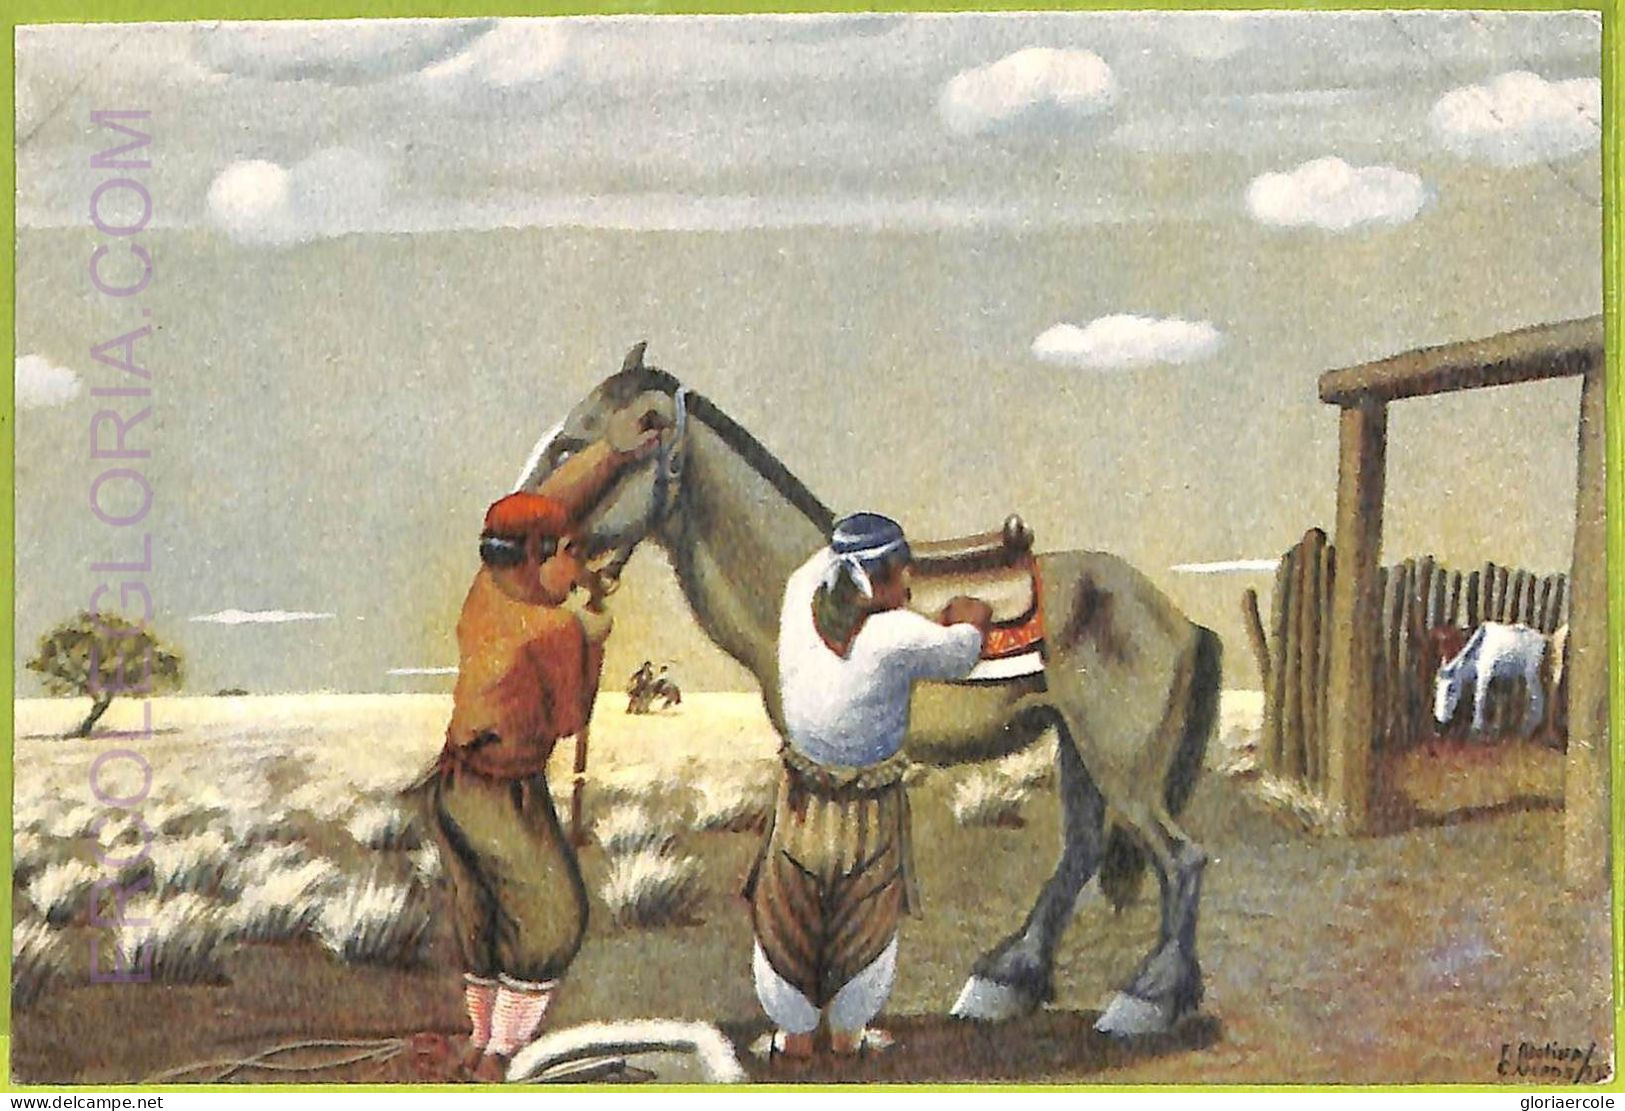 Af1165 - ARGENTINA - Vintage Postcard - Ethnic - Amérique